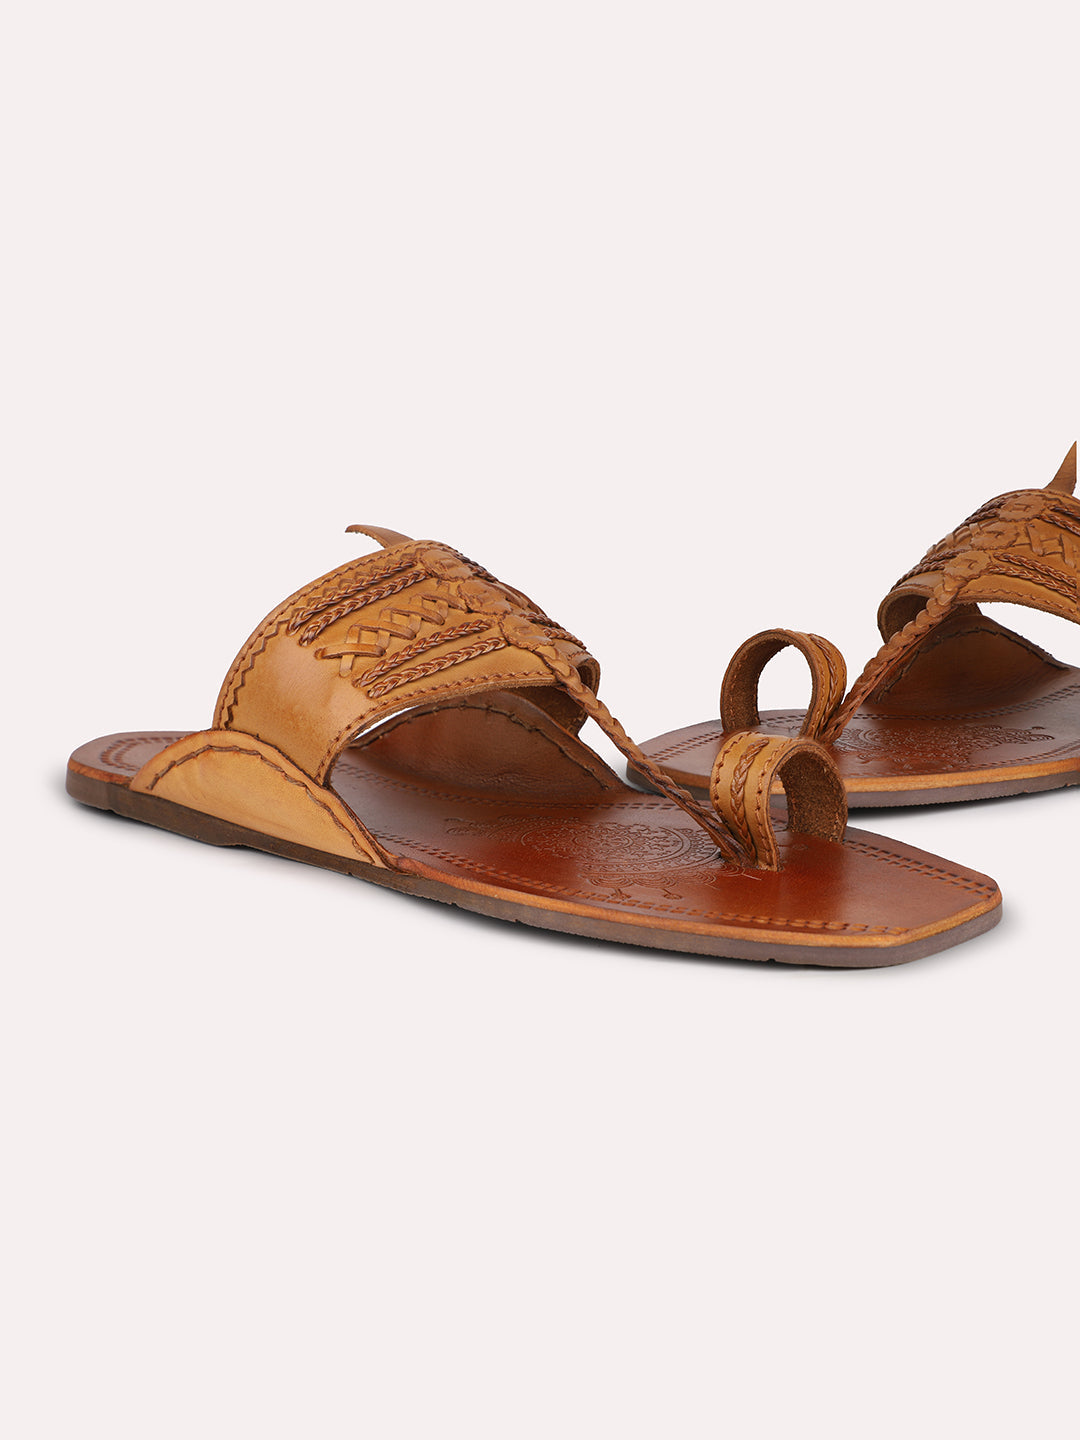 Privo Tan Kolhapuris Sandal for Men